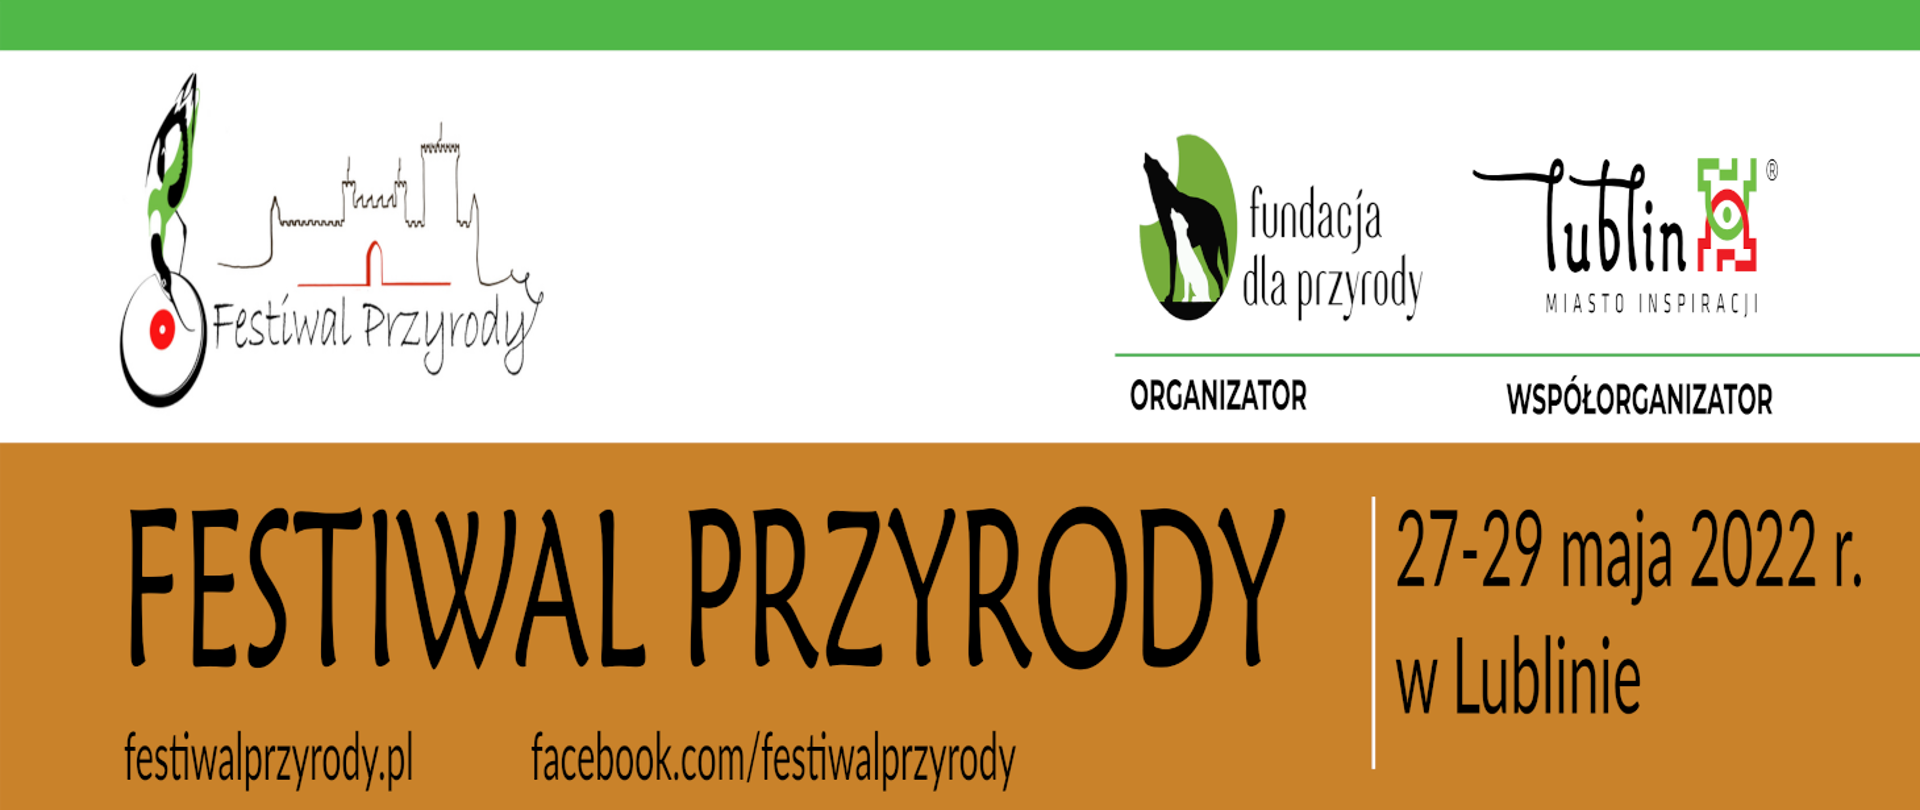 Festiwal Przyrody w Lublinie